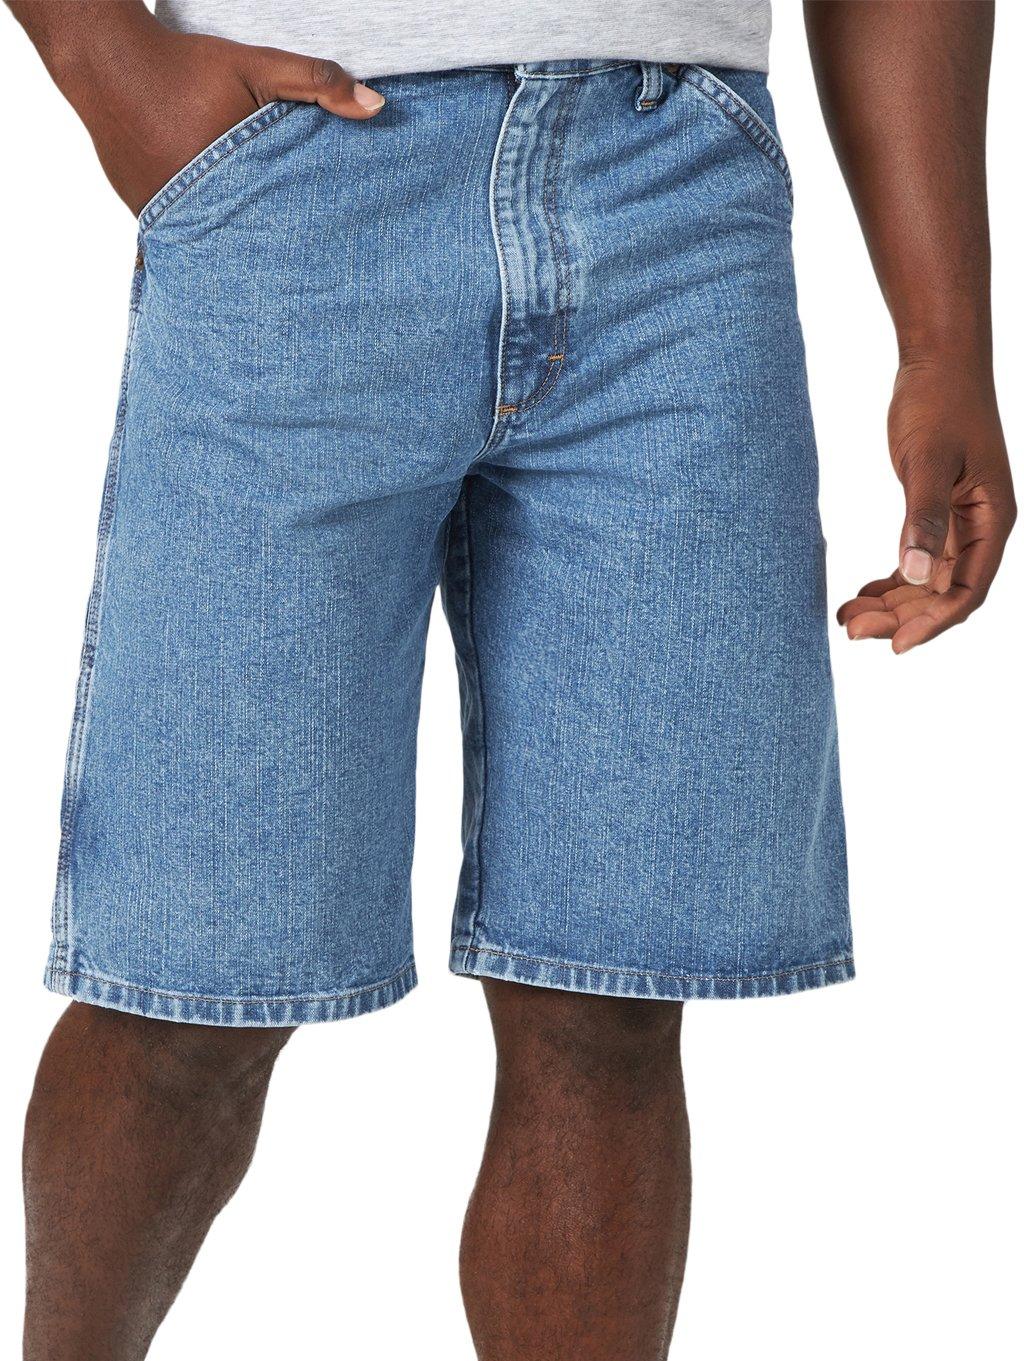 wrangler jeans shorts mens